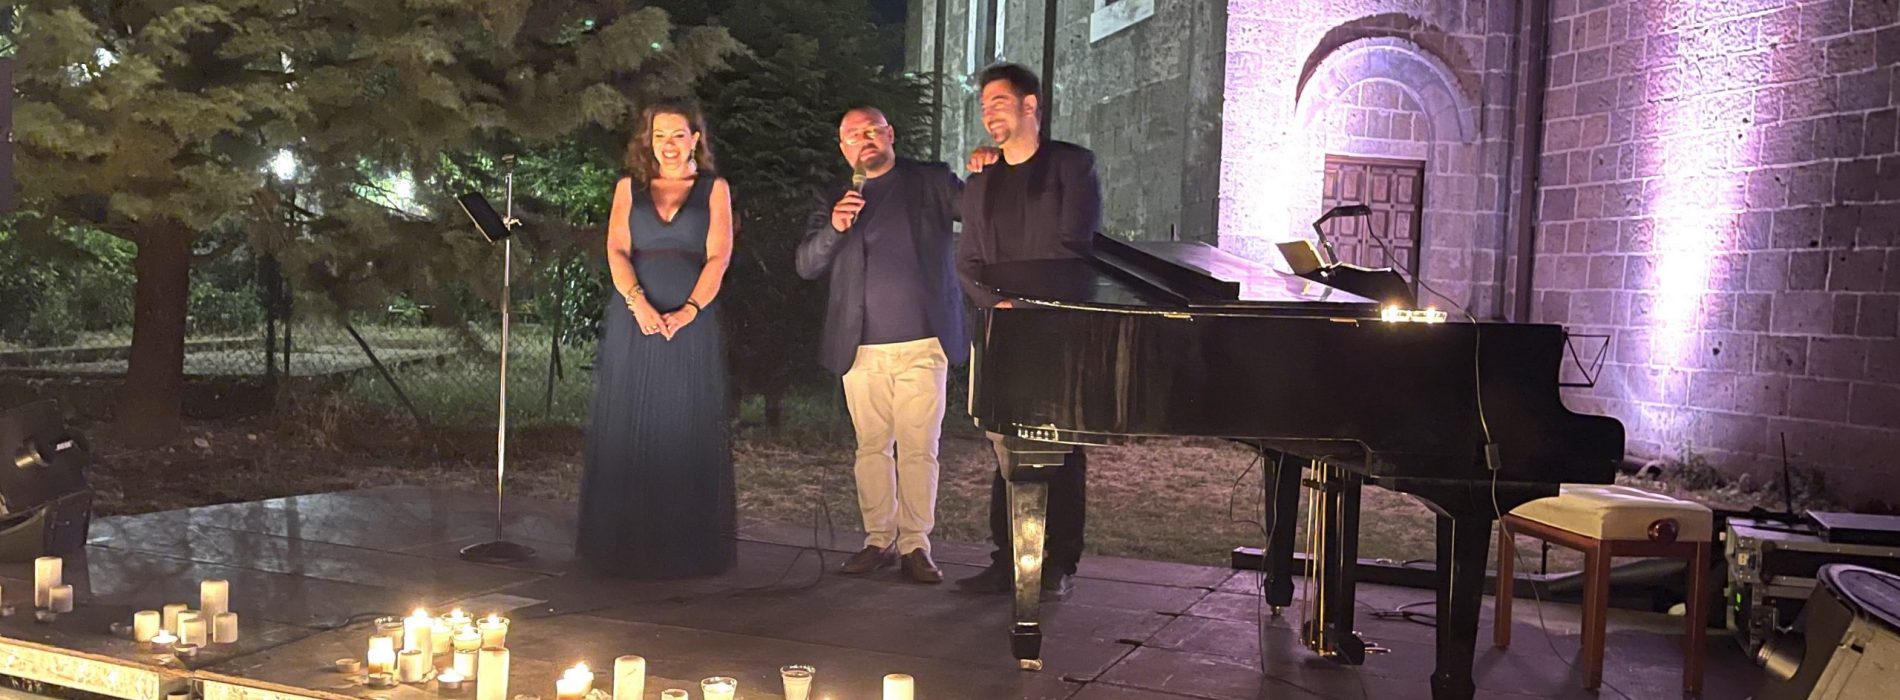 Un concerto romantico, le candele illuminano Casertavecchia